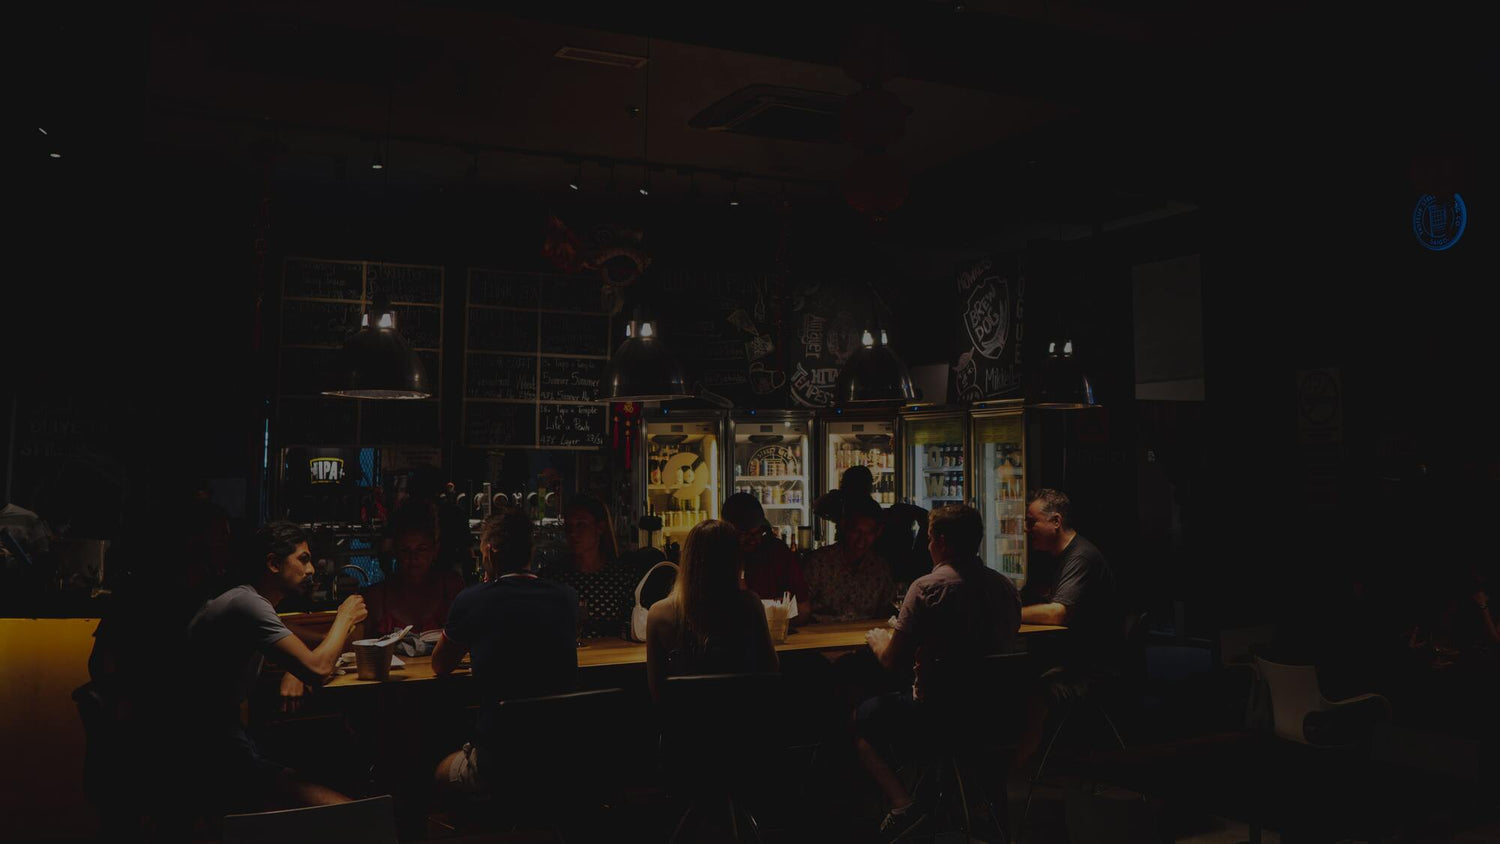 Interior of Taps Beer Bar Changkat